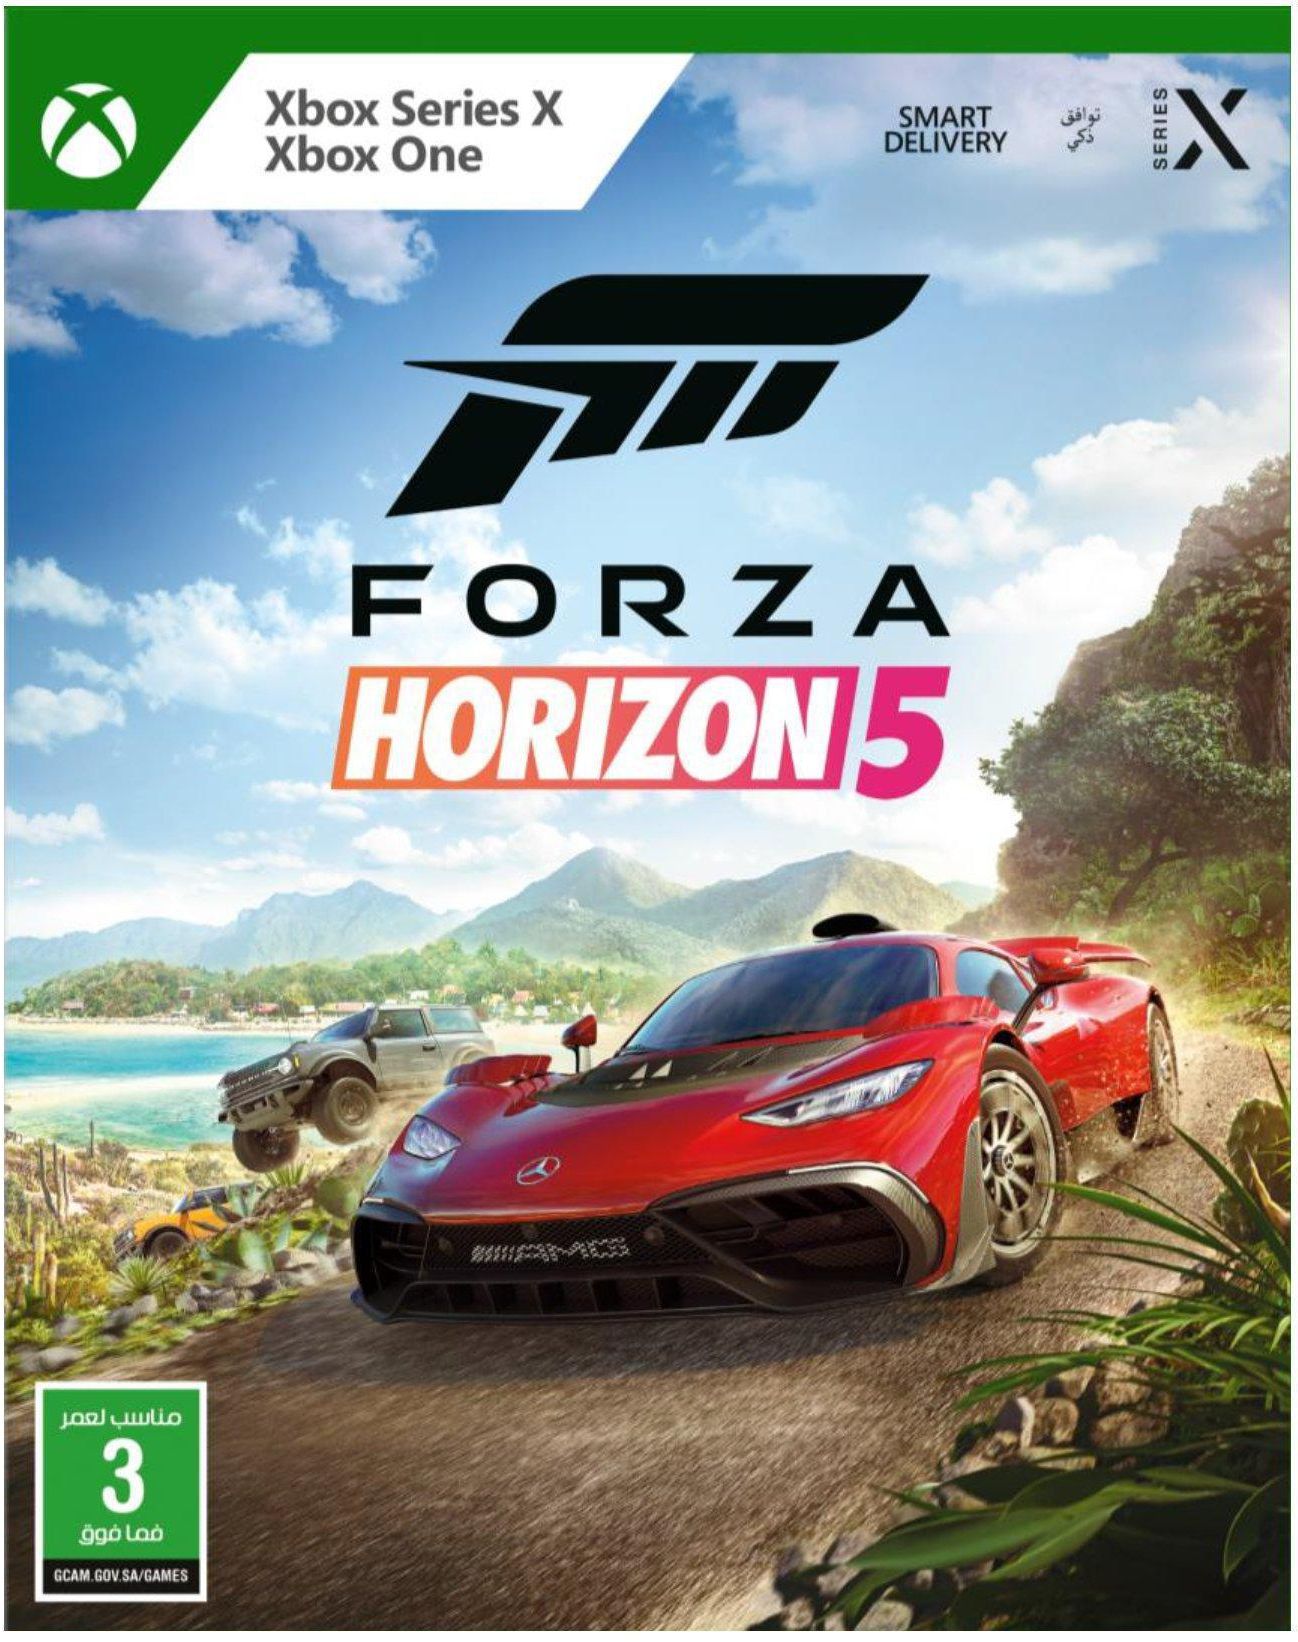 Xbox Series X, Xbox one, Forza Horizon 5